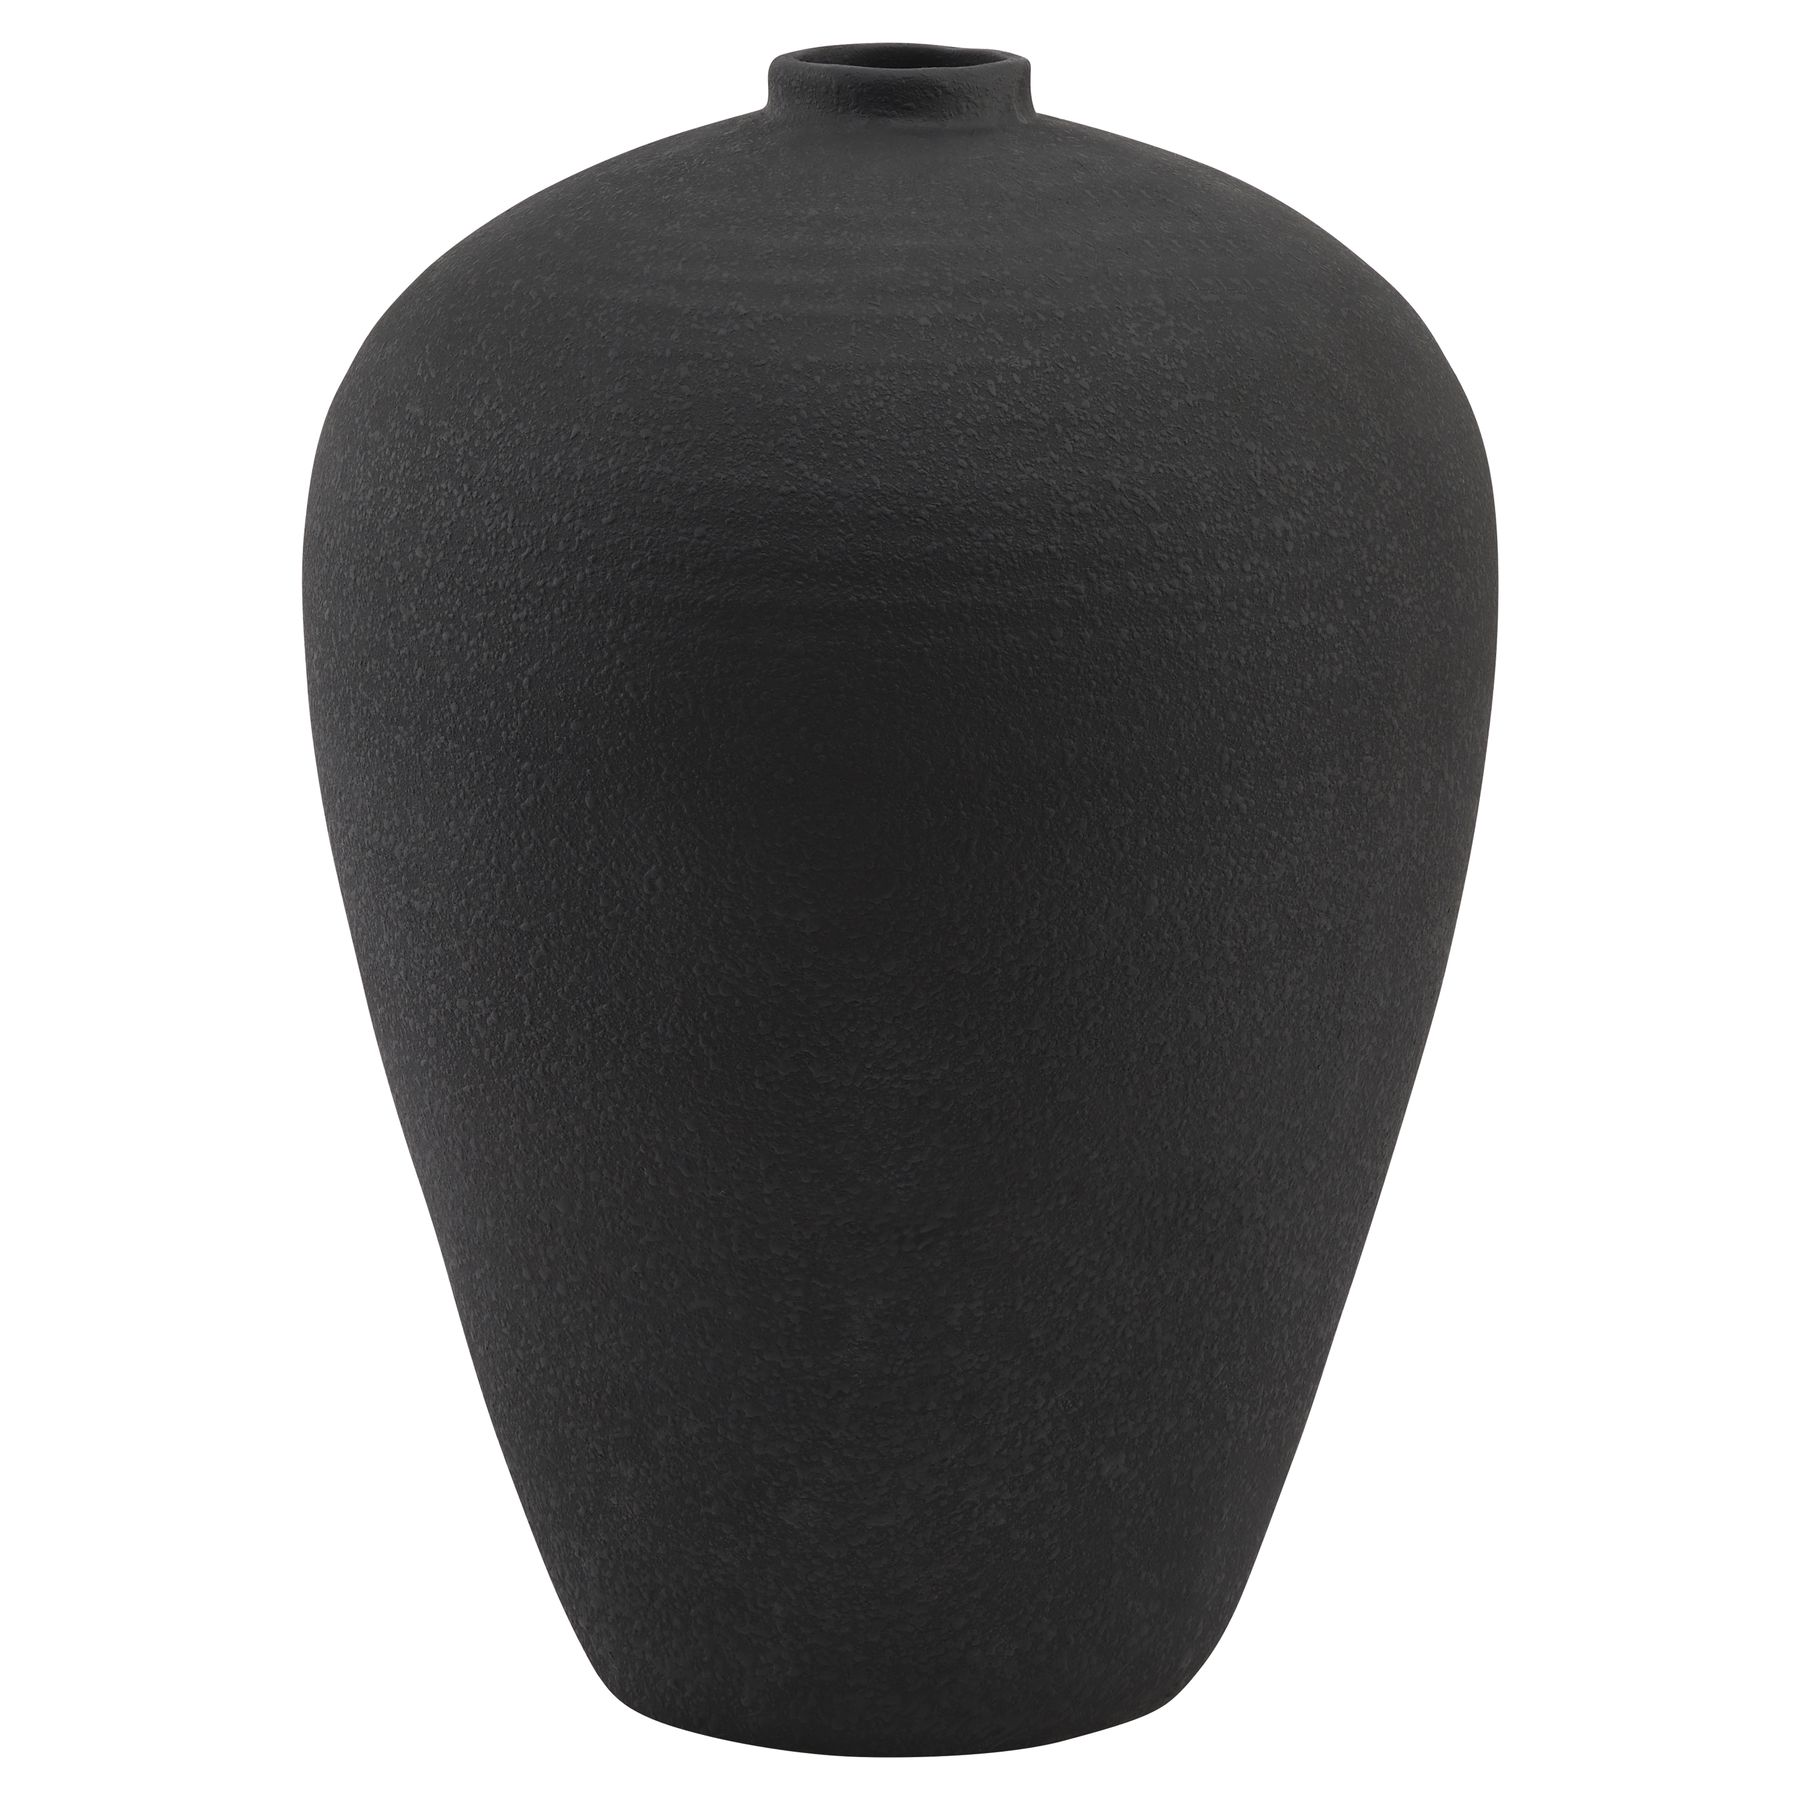 Matt Black Tall  Astral Vase - Image 1